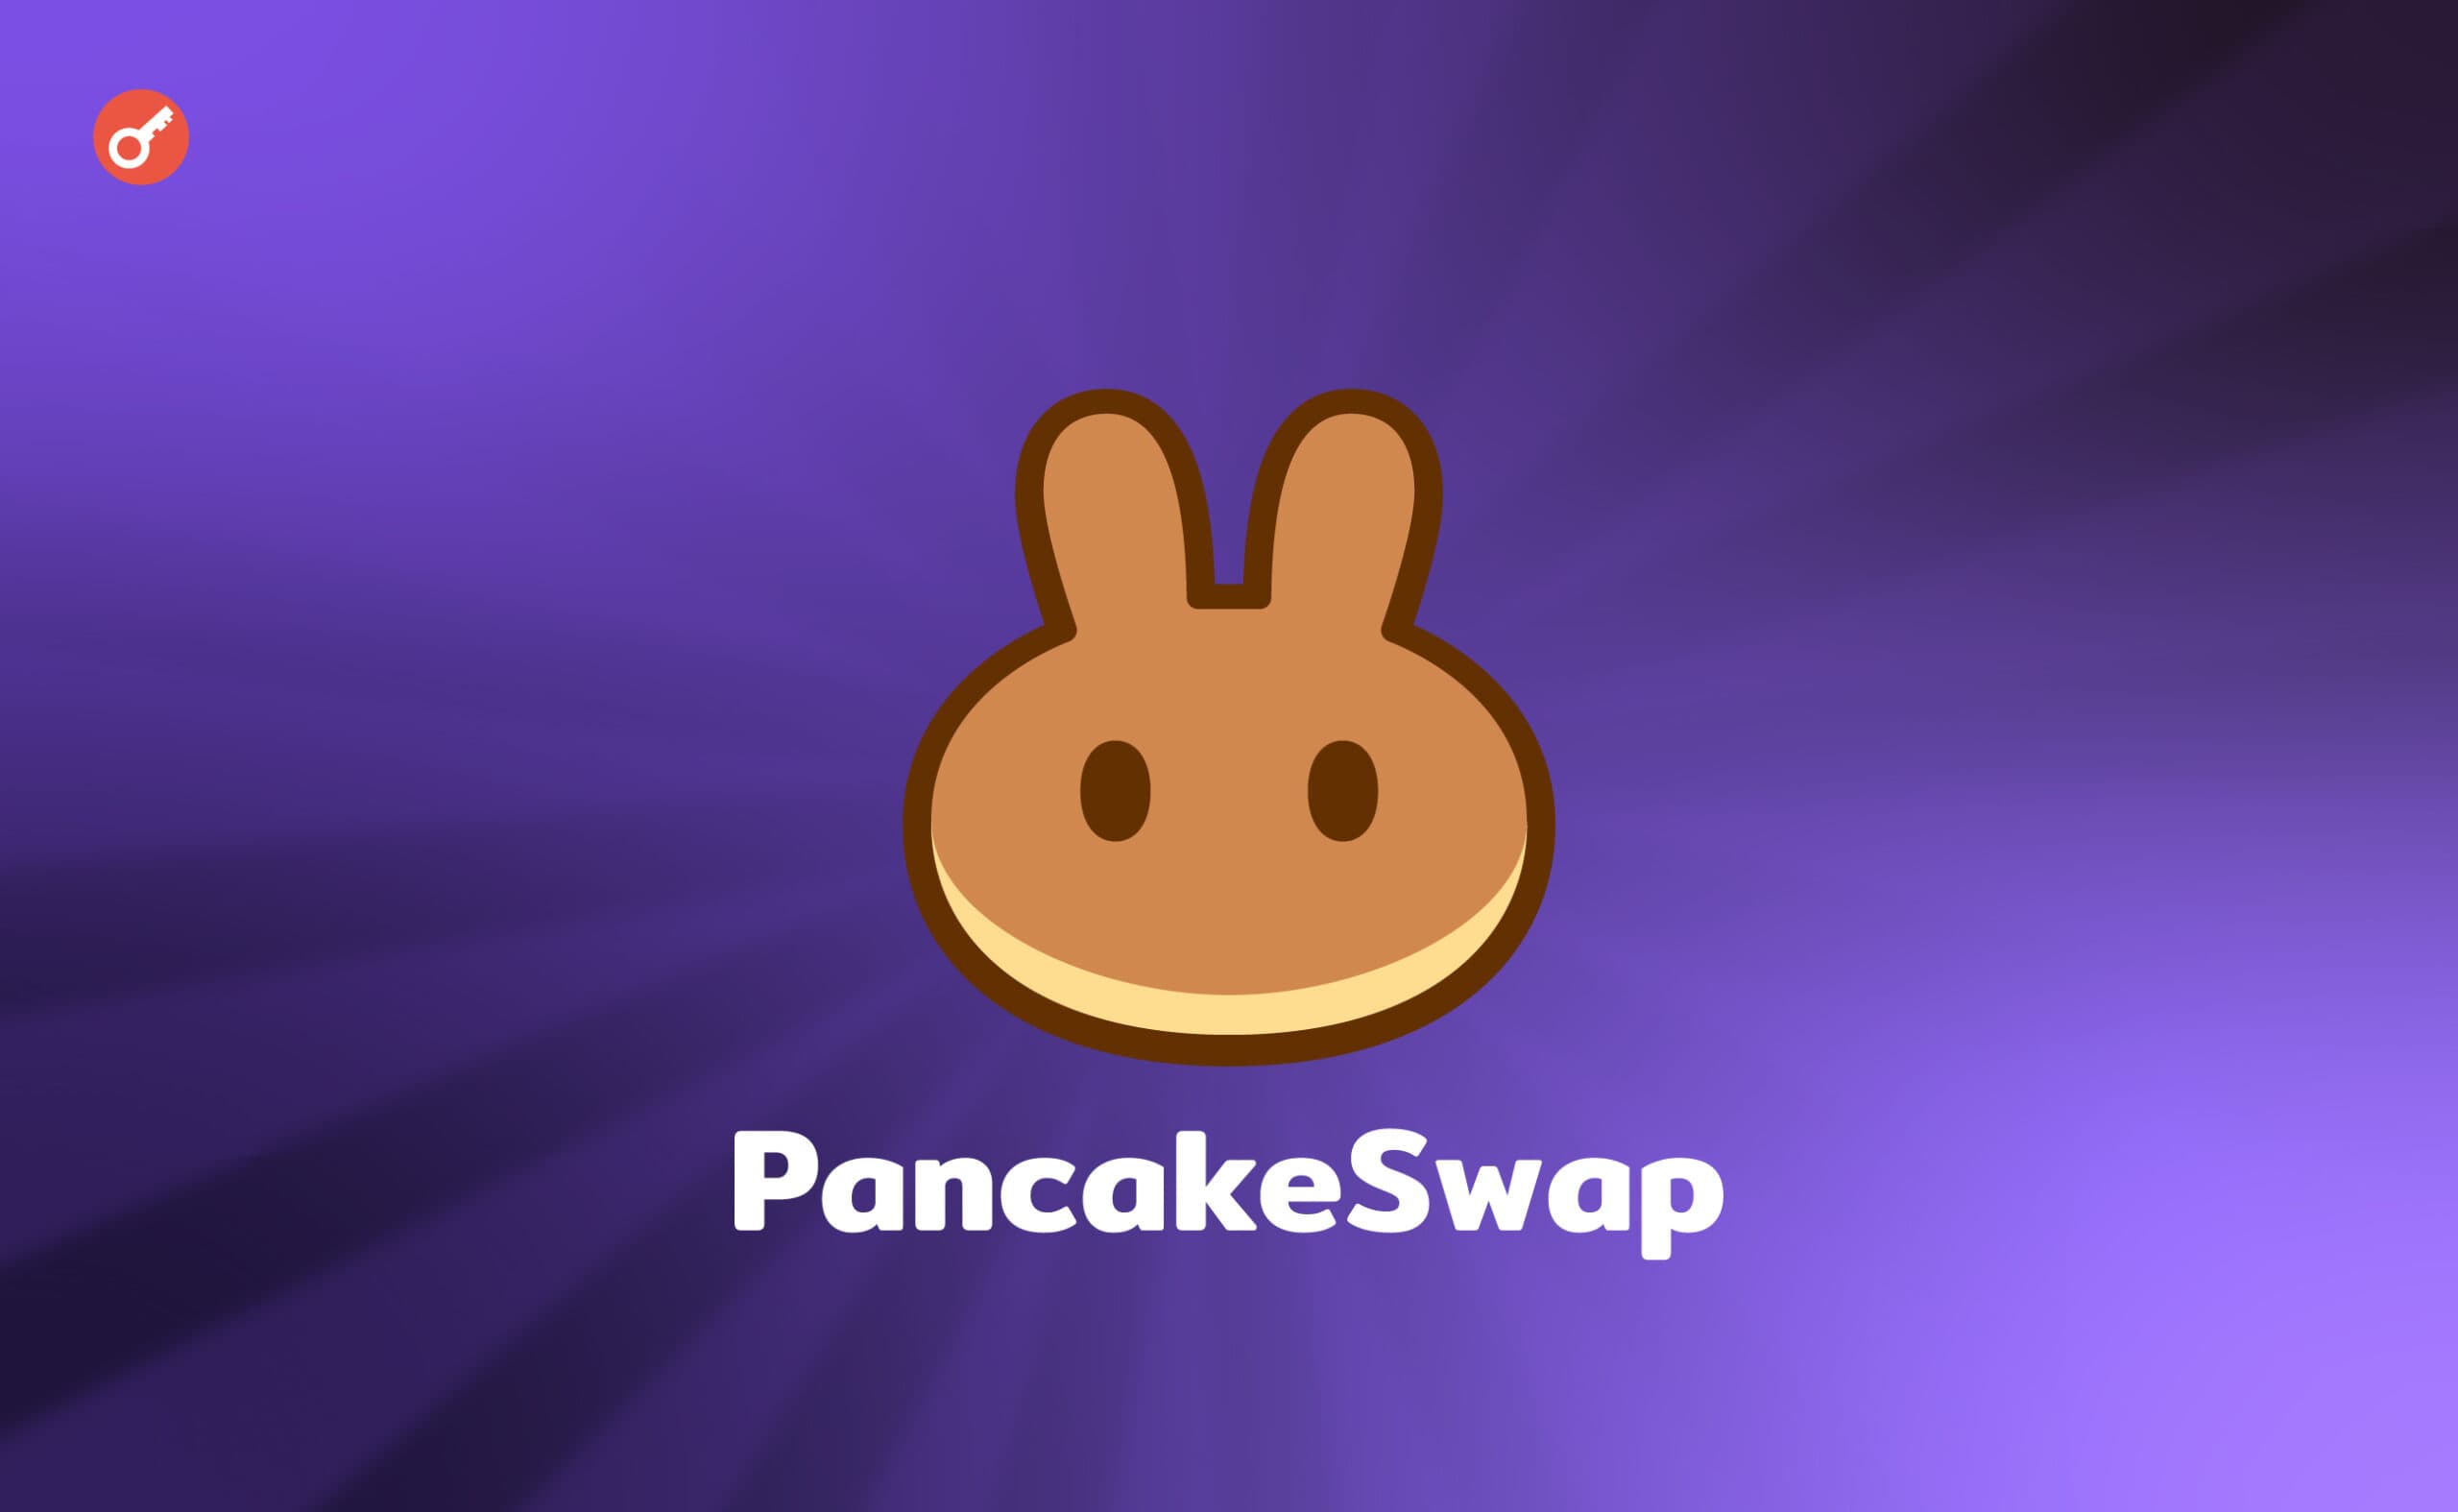 PancakeSwap запустила функцию Position Manager для управления активами. Заглавный коллаж новости.